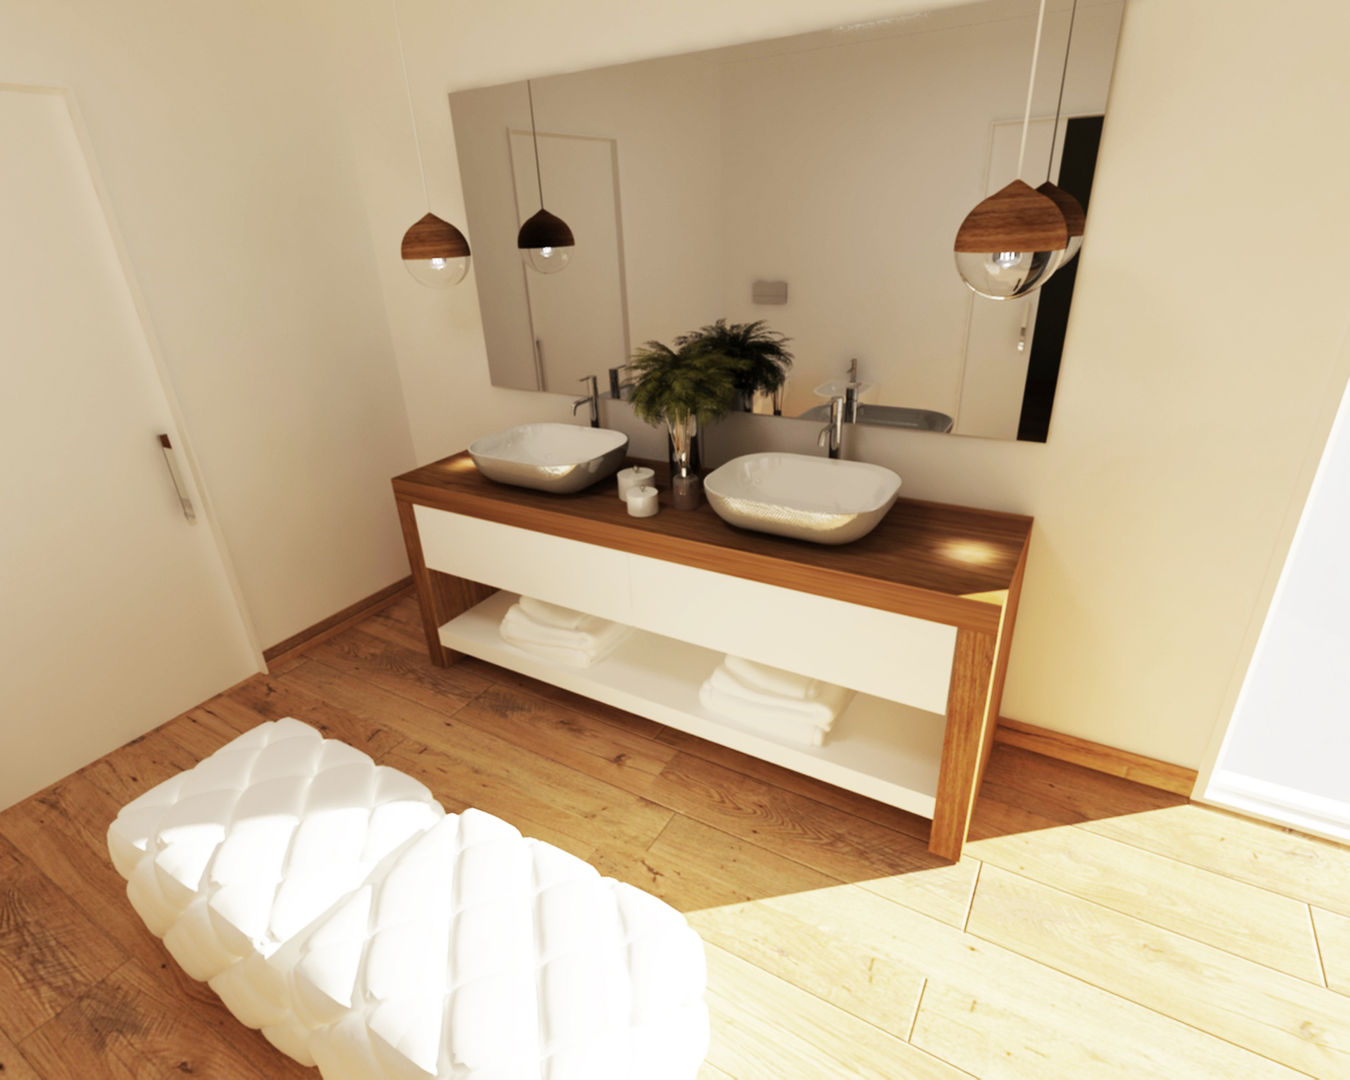 Ambientes 3D de casas de banho Smile Bath, Smile Bath S.A. Smile Bath S.A. Nowoczesna łazienka